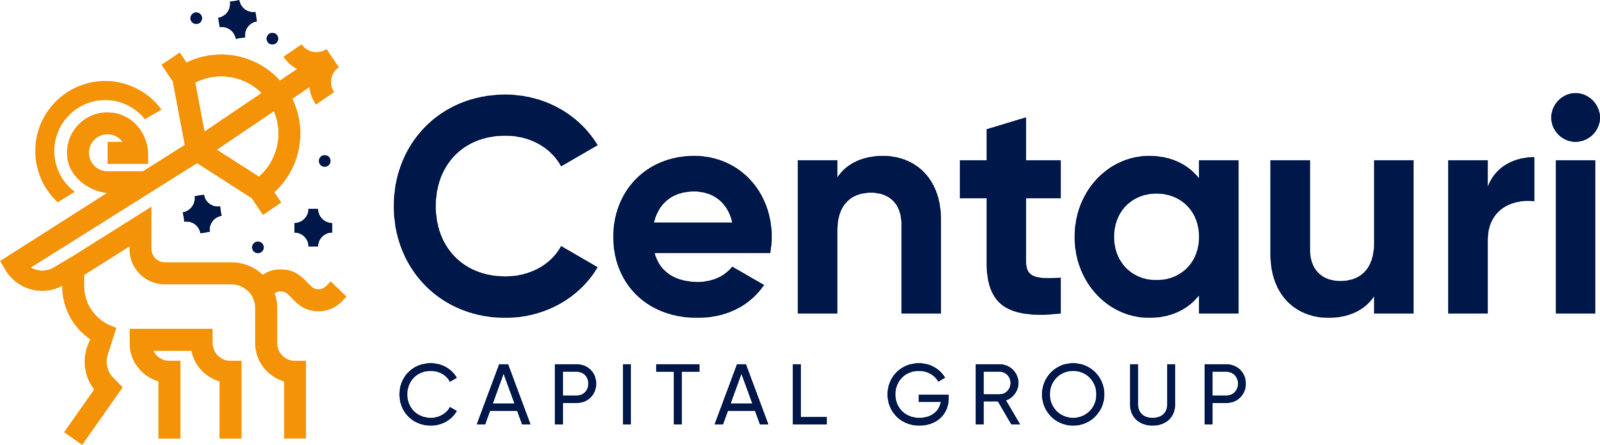 Centauri Capital Group